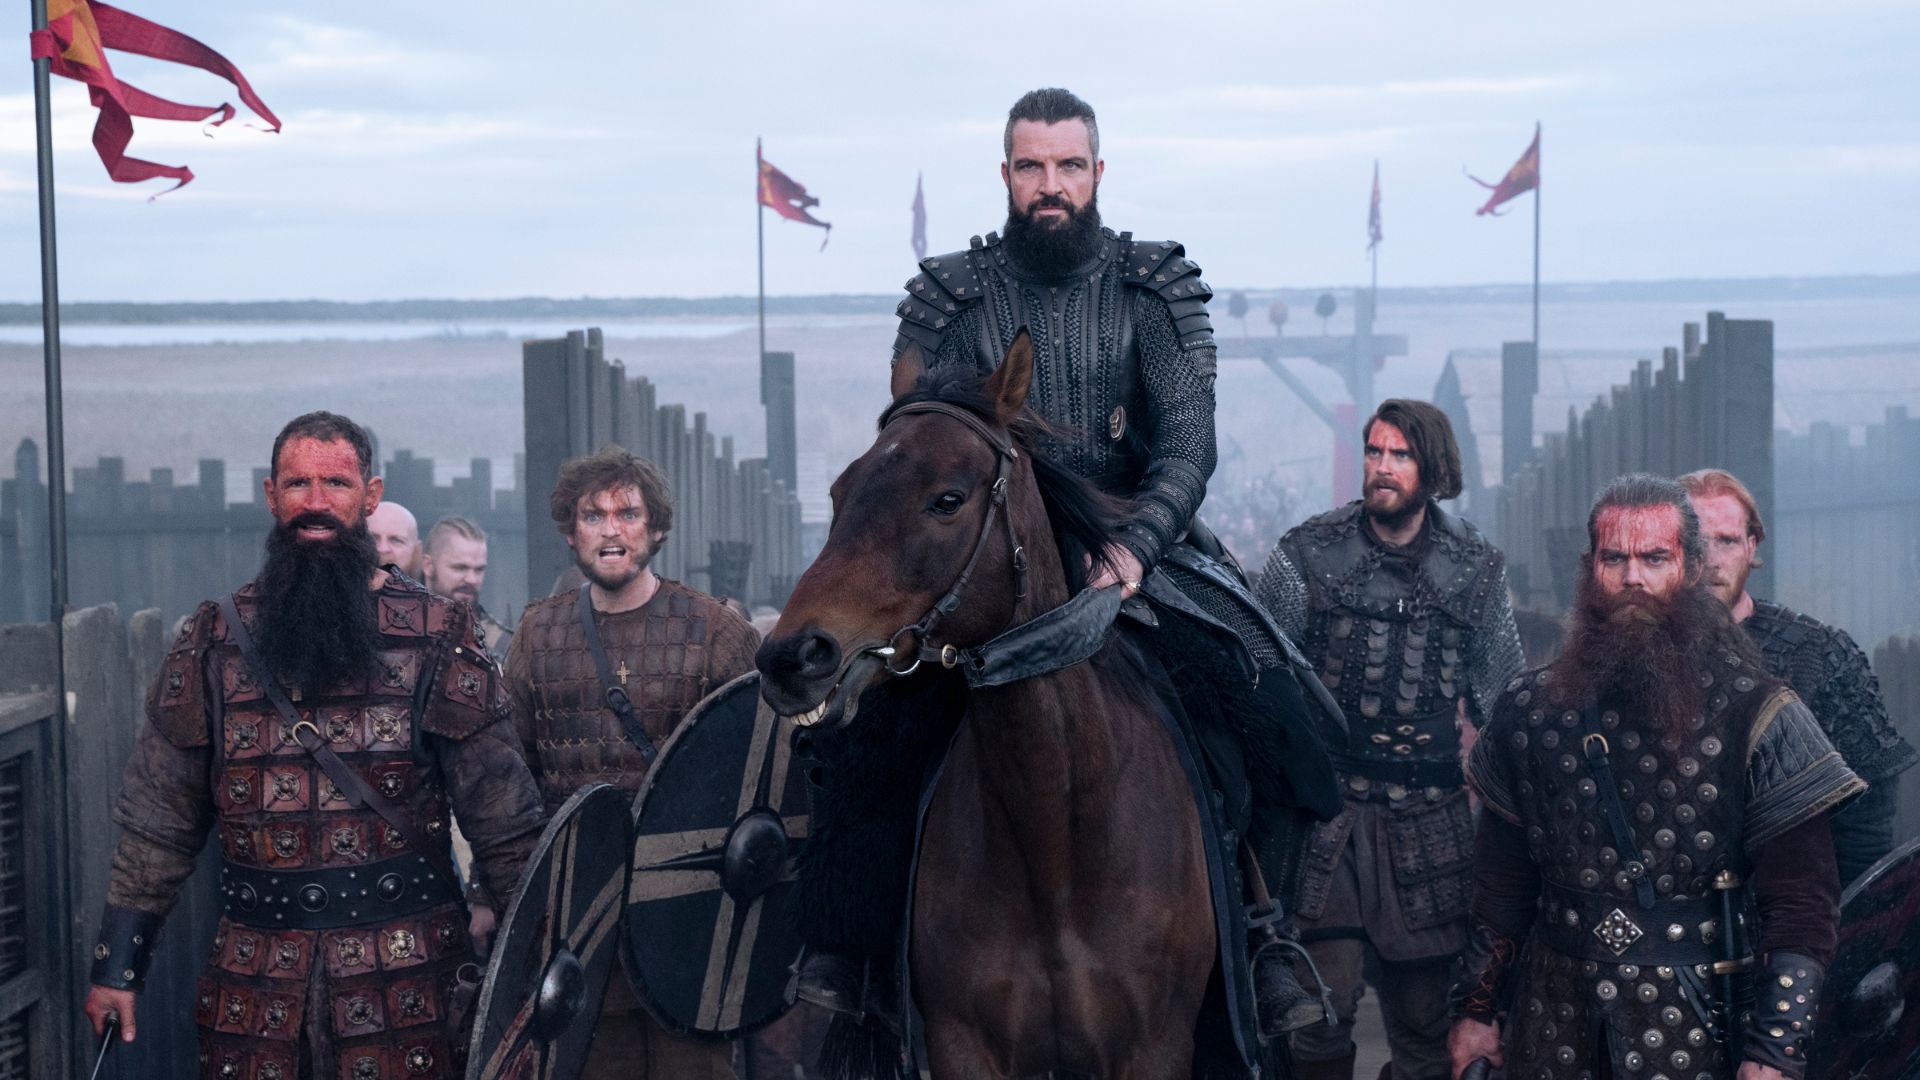 King Canute on horseback in Vikings: Valhalla